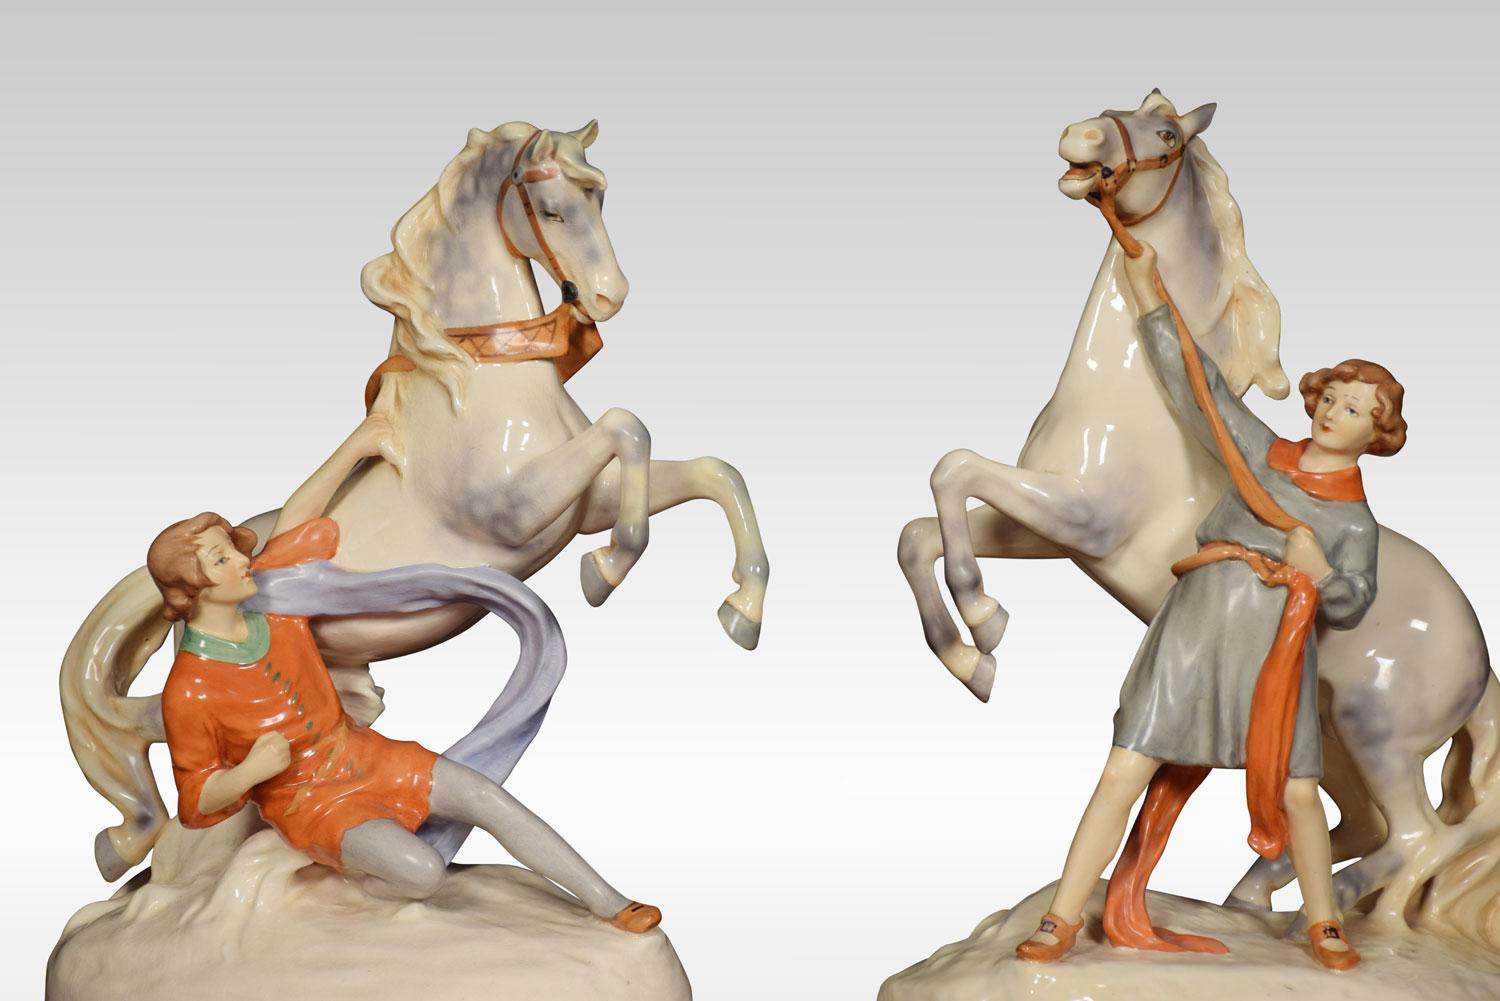 Paire de groupes de figures de Royal Dux représentant des jeunes hommes avec des chevaux, modélisés en train de se cabrer et accompagnés d'une main stabile, sur des bases ovales. Marques sous glaçure sur les bases.
Dimensions :
Hauteur 19